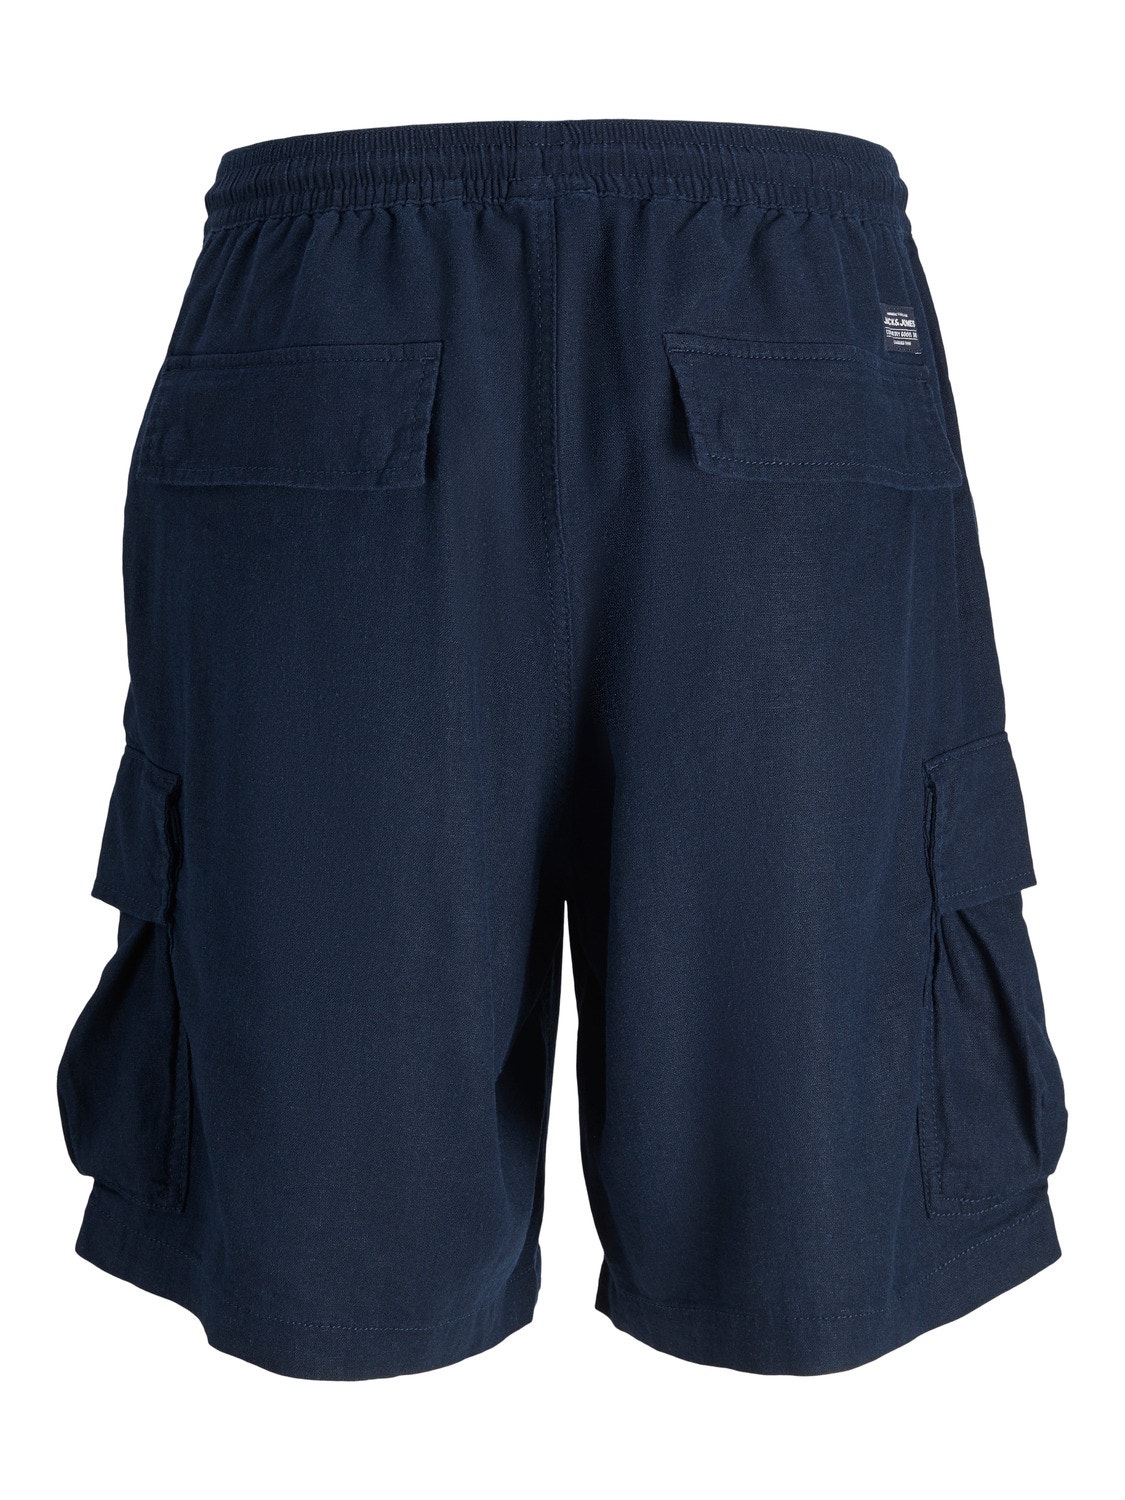 Jack & Jones Loose Fit Cargo Shorts Für jungs -Dark Navy - 12255664